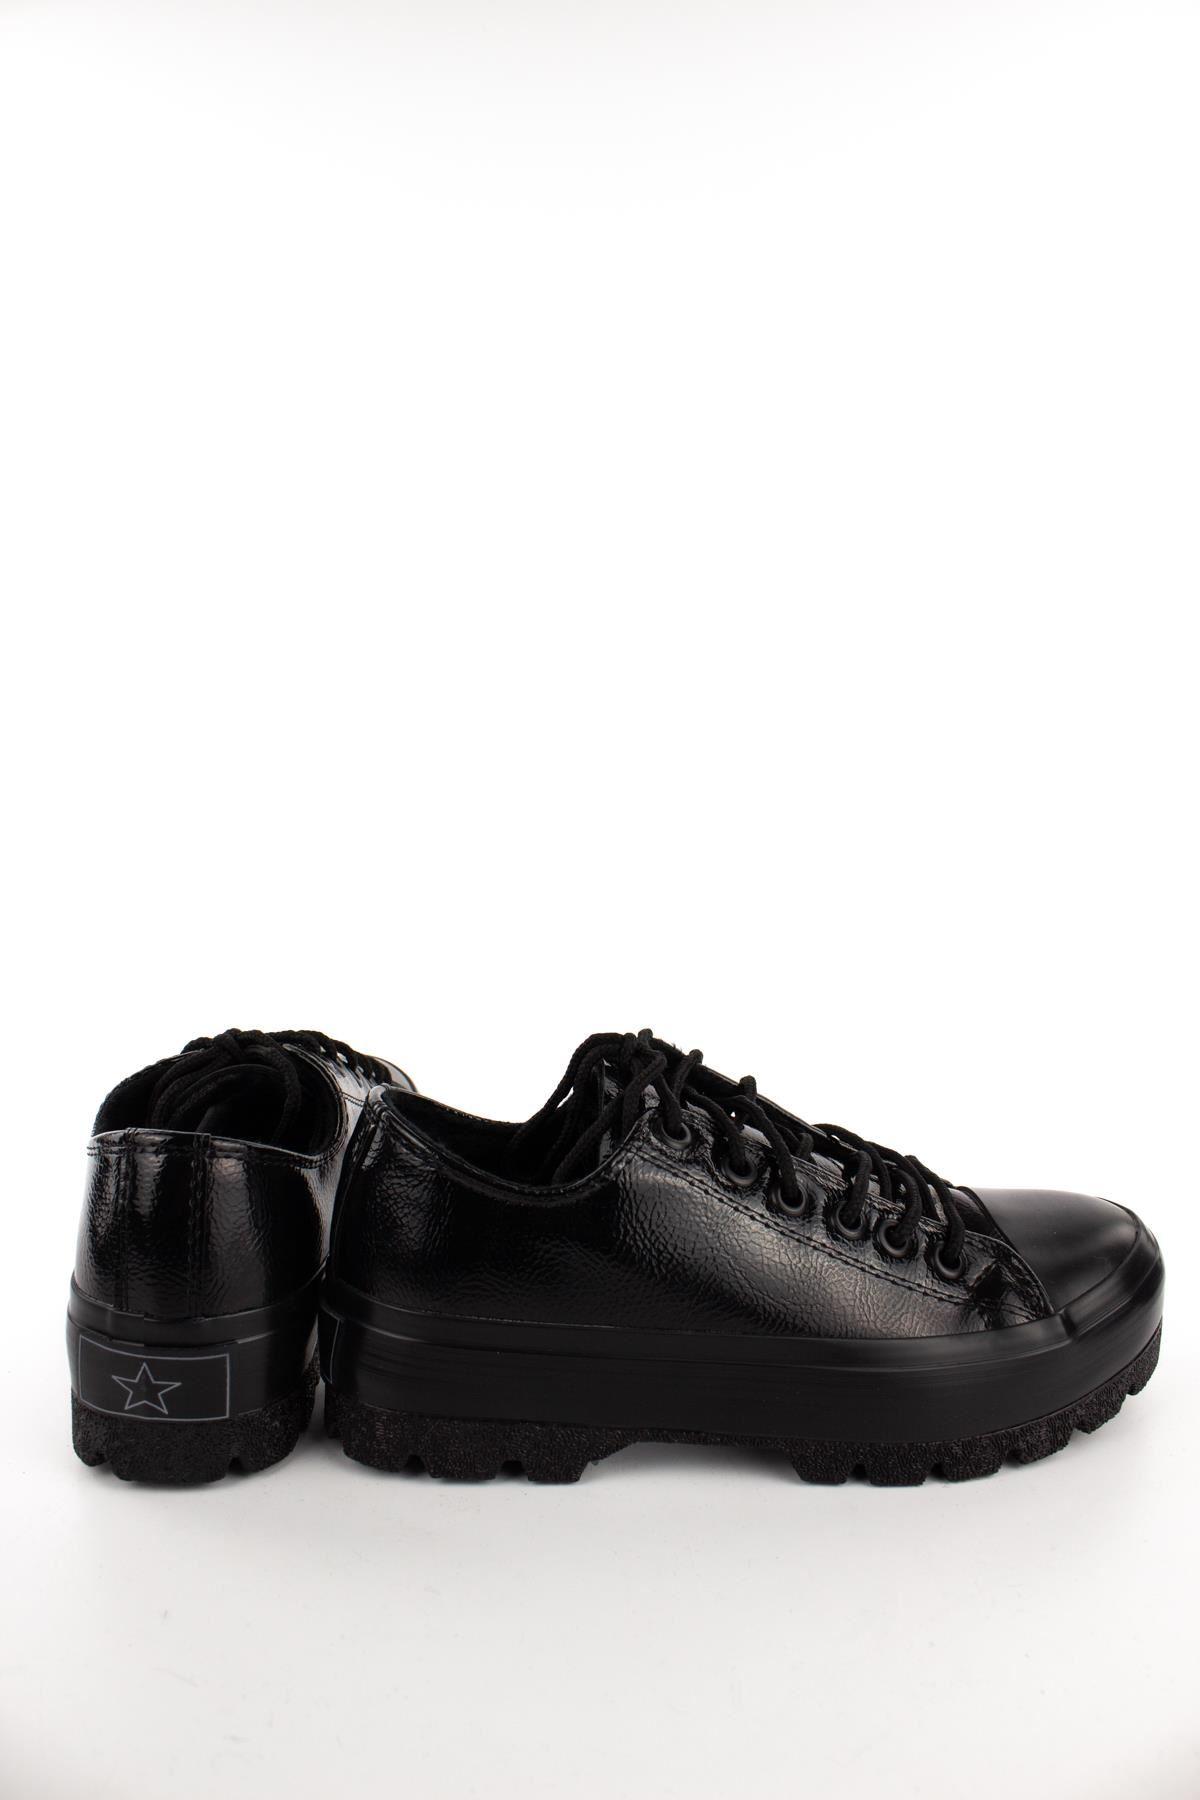 Mita Kadın Sneaker Siyah Kırışık